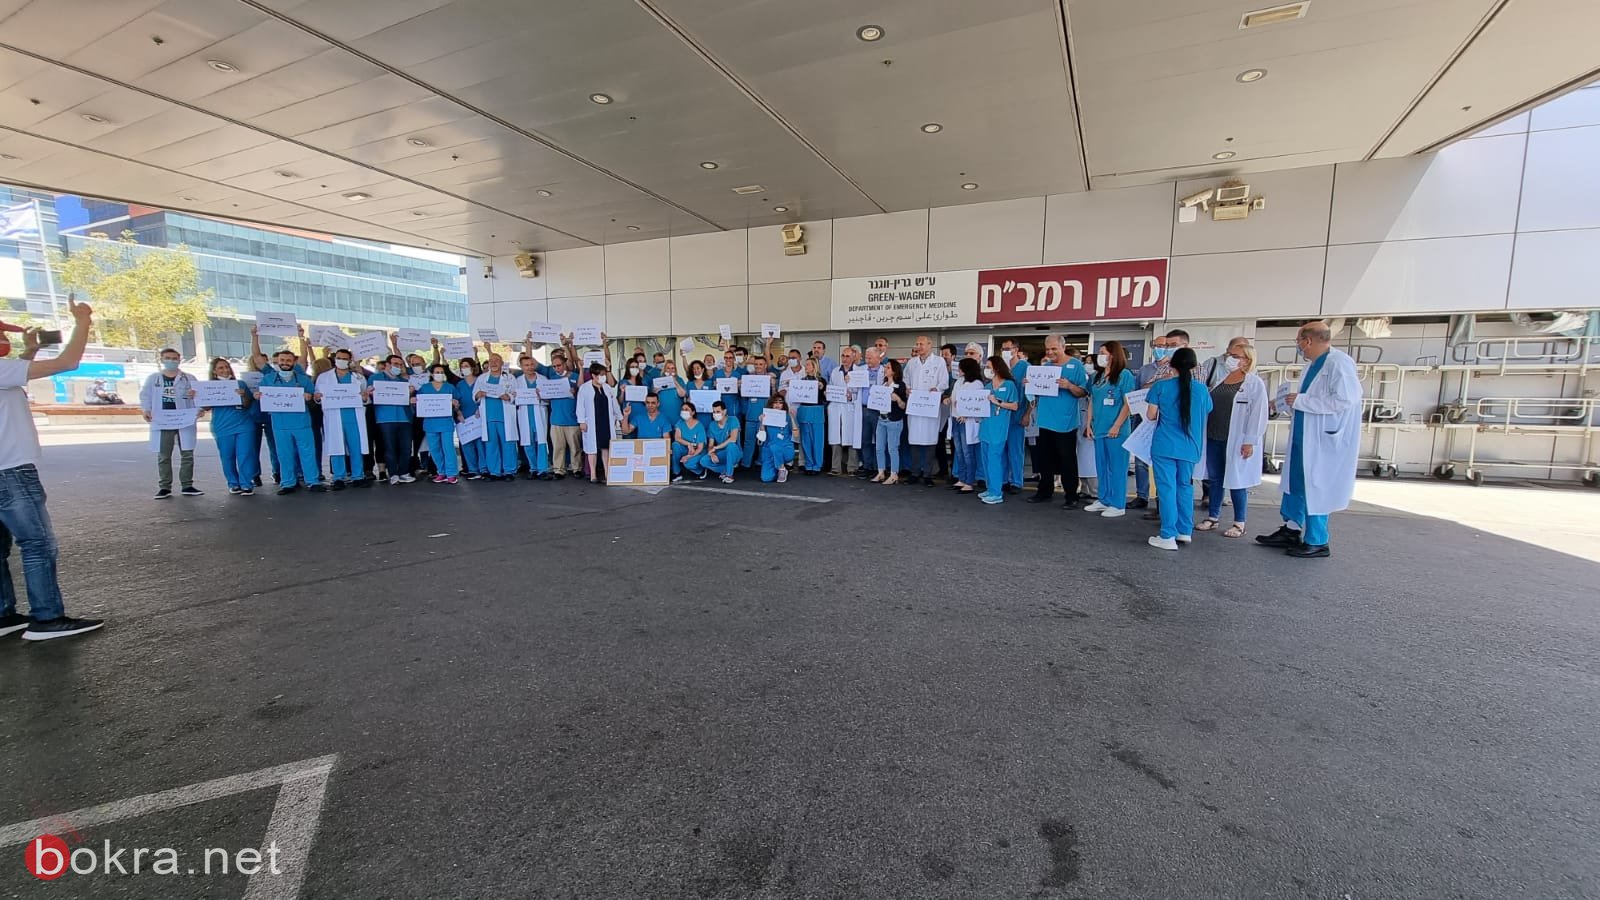 اطباء وممرضو مستشفى رمبام: "جميعنا يهوداً وعربًا نرفض أن نكون اعداءً"-2